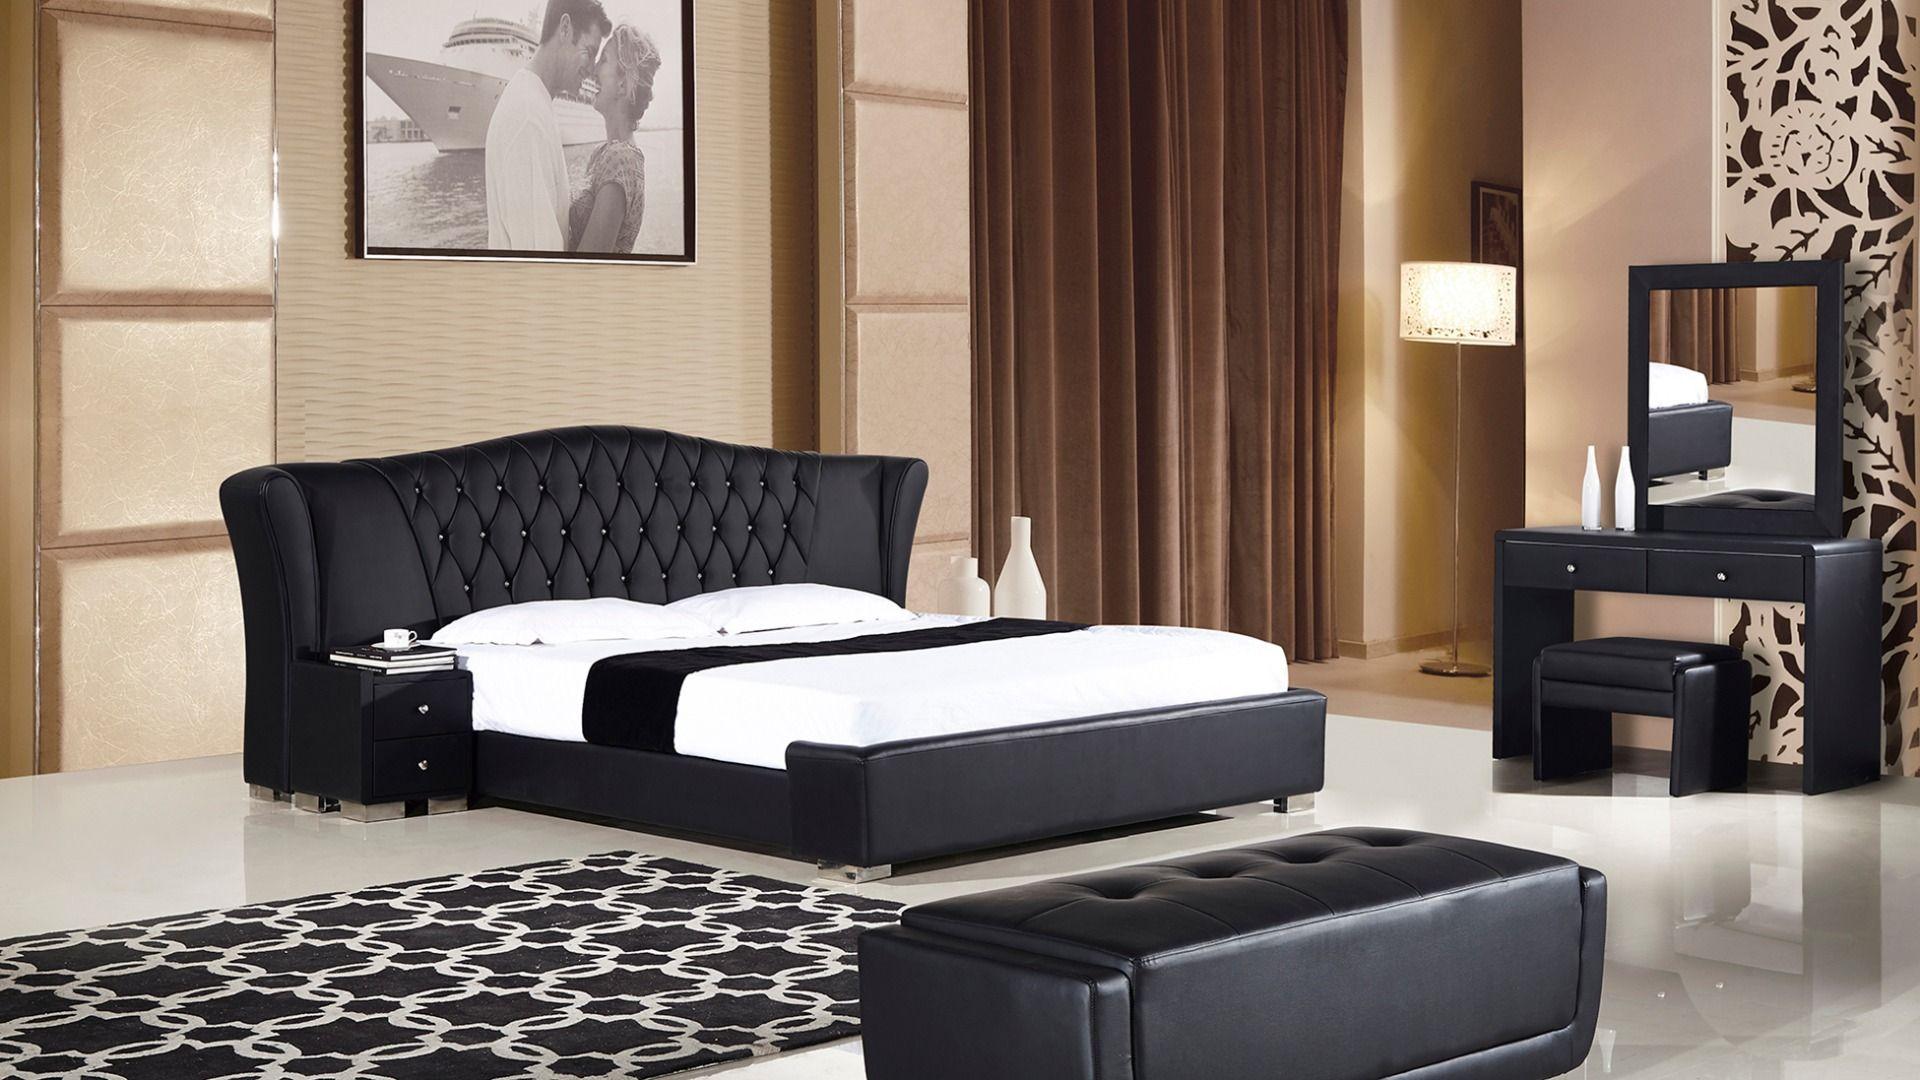 

    
AE B-D028-BK-CK-3PC American Eagle Furniture Platform Bedroom Set
